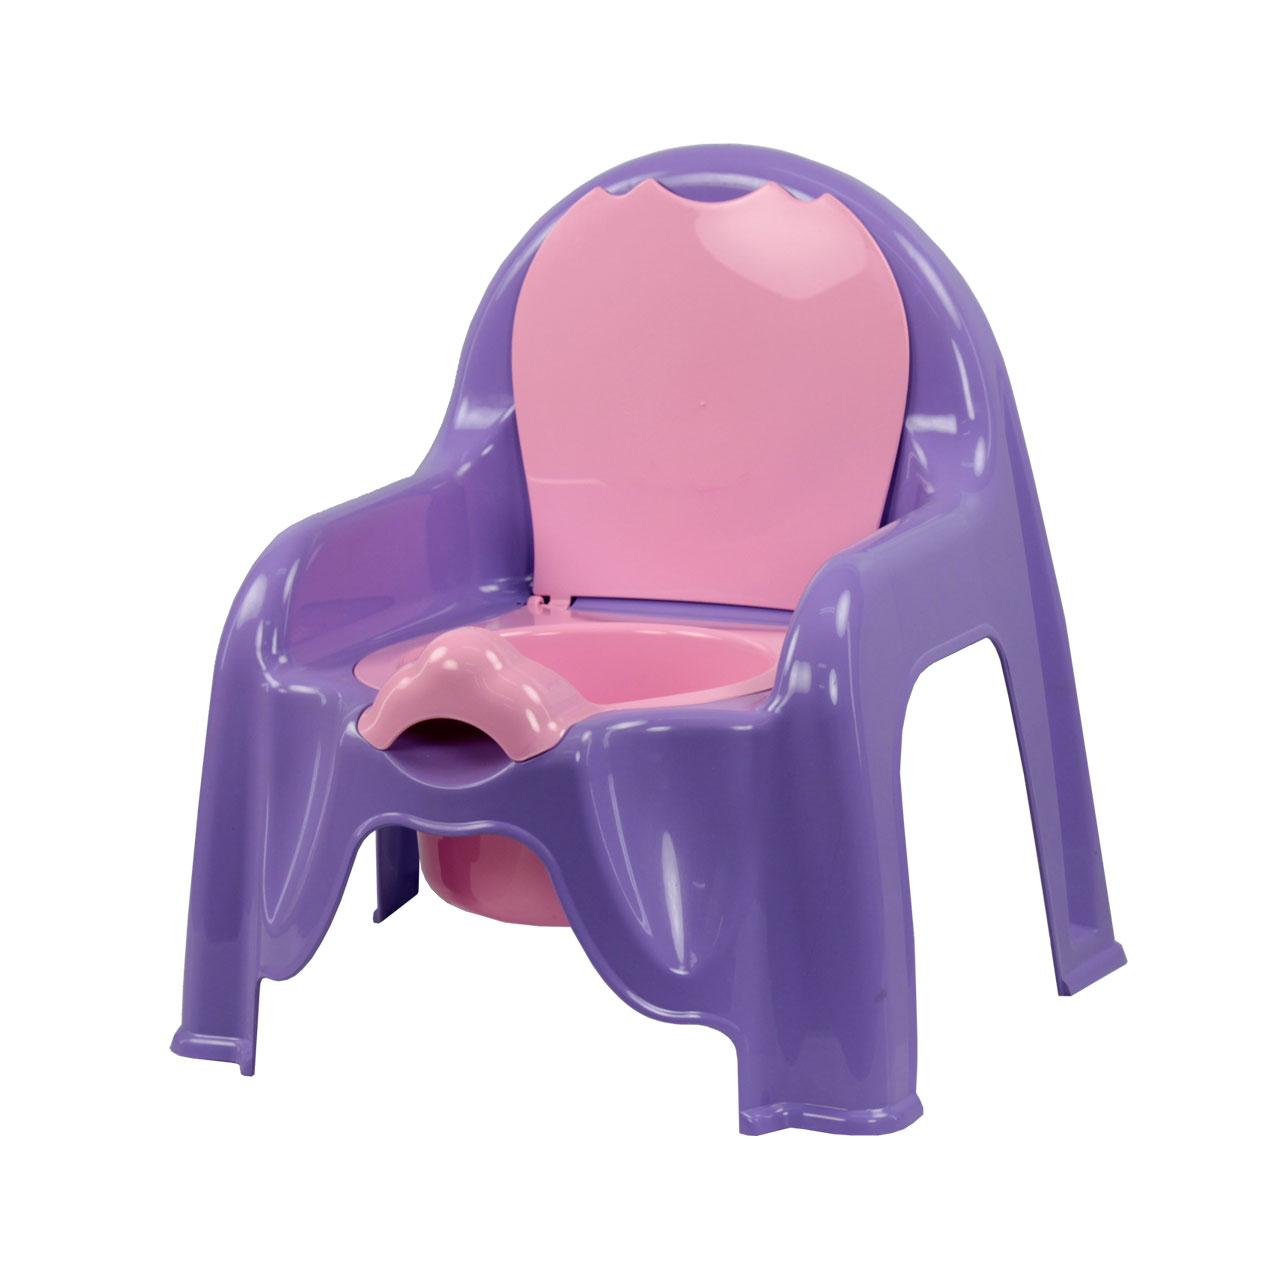 Детский горшок-стульчик, фиолетовый (Альтернатива пласт, Россия)